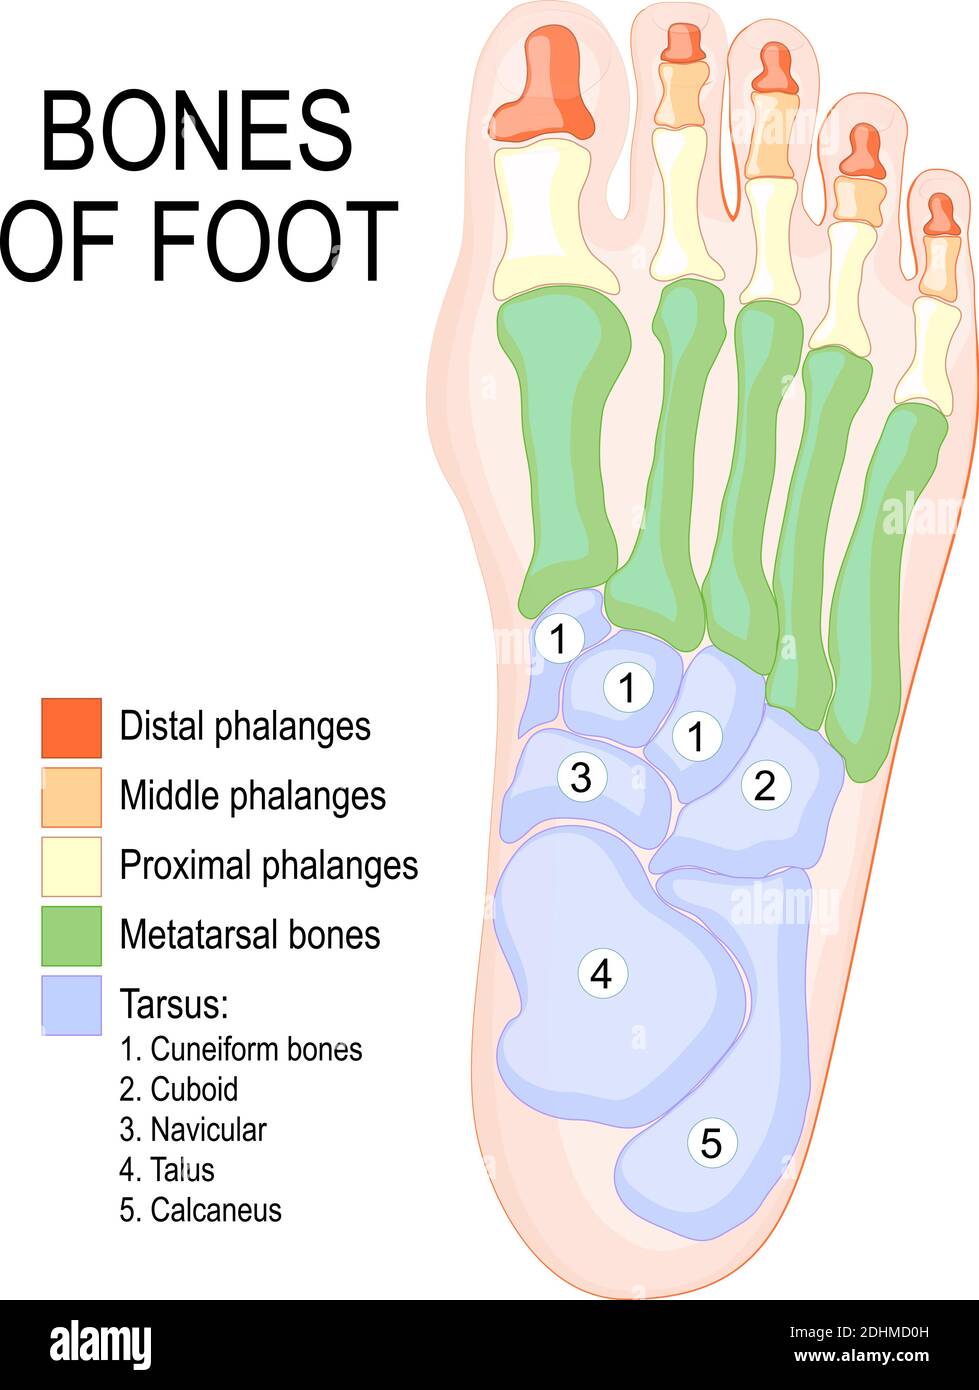 Ossa del piede. Anatomia umana. Il diagramma mostra il posizionamento e i nomi di tutte le ossa del piede. Illustrazione Vettoriale